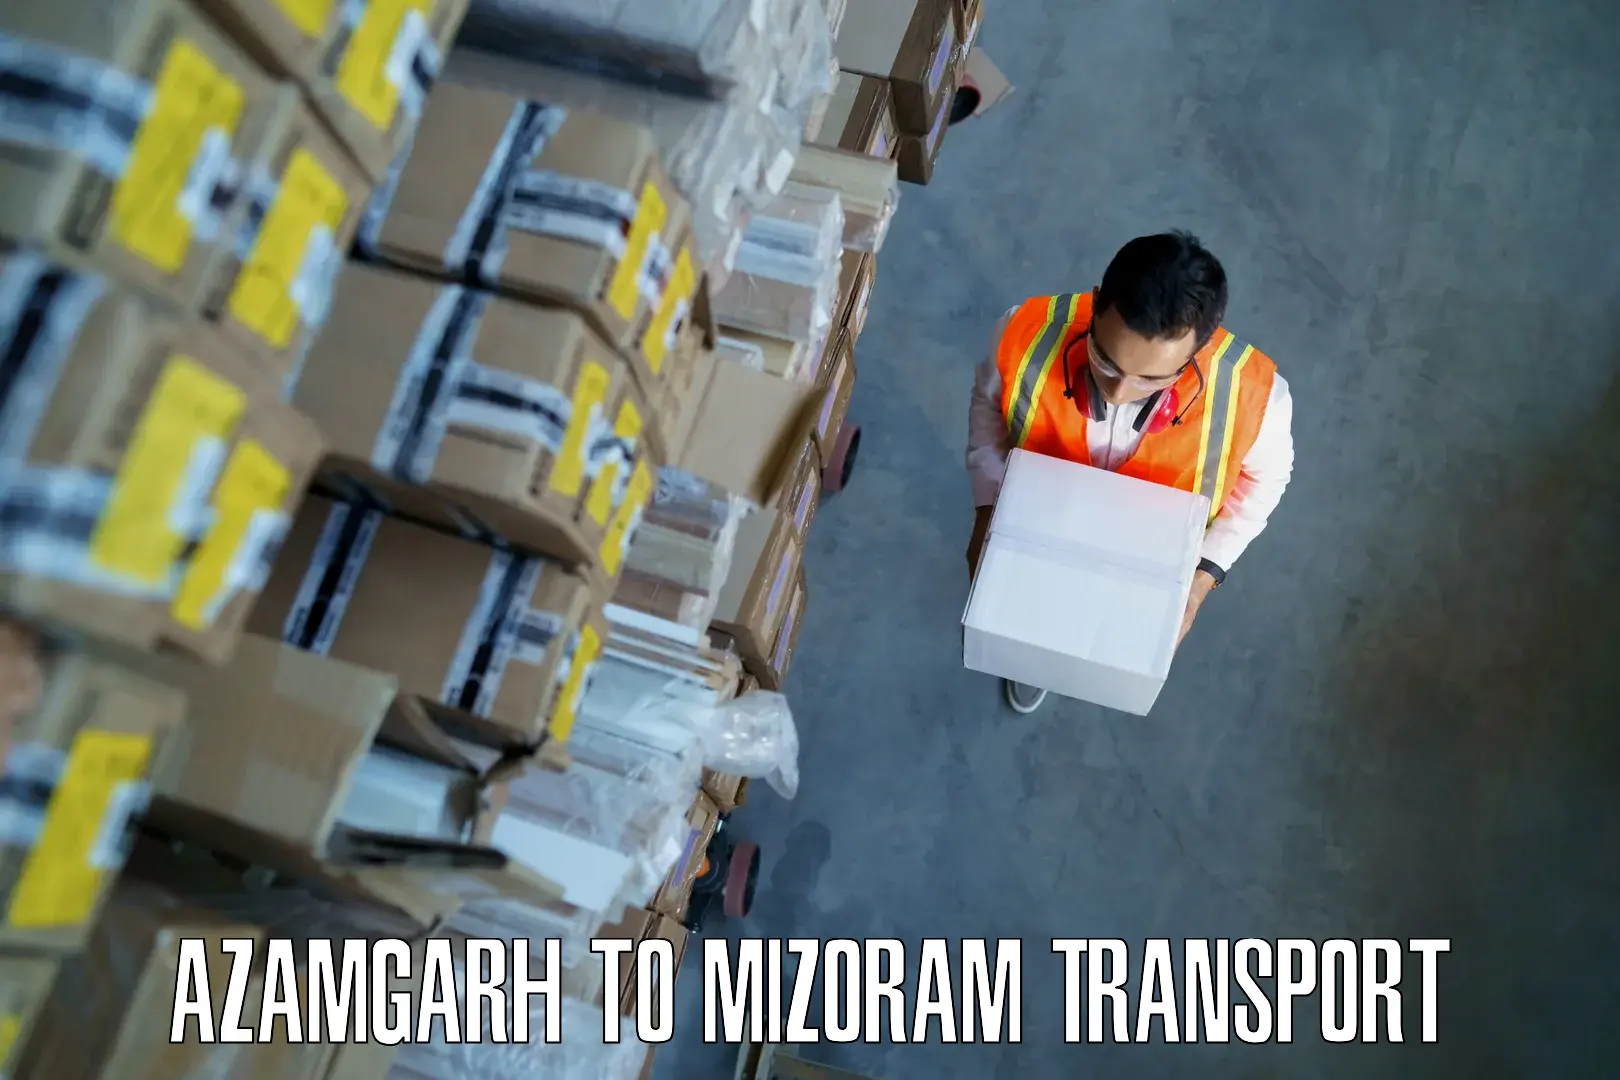 Delivery service Azamgarh to Siaha